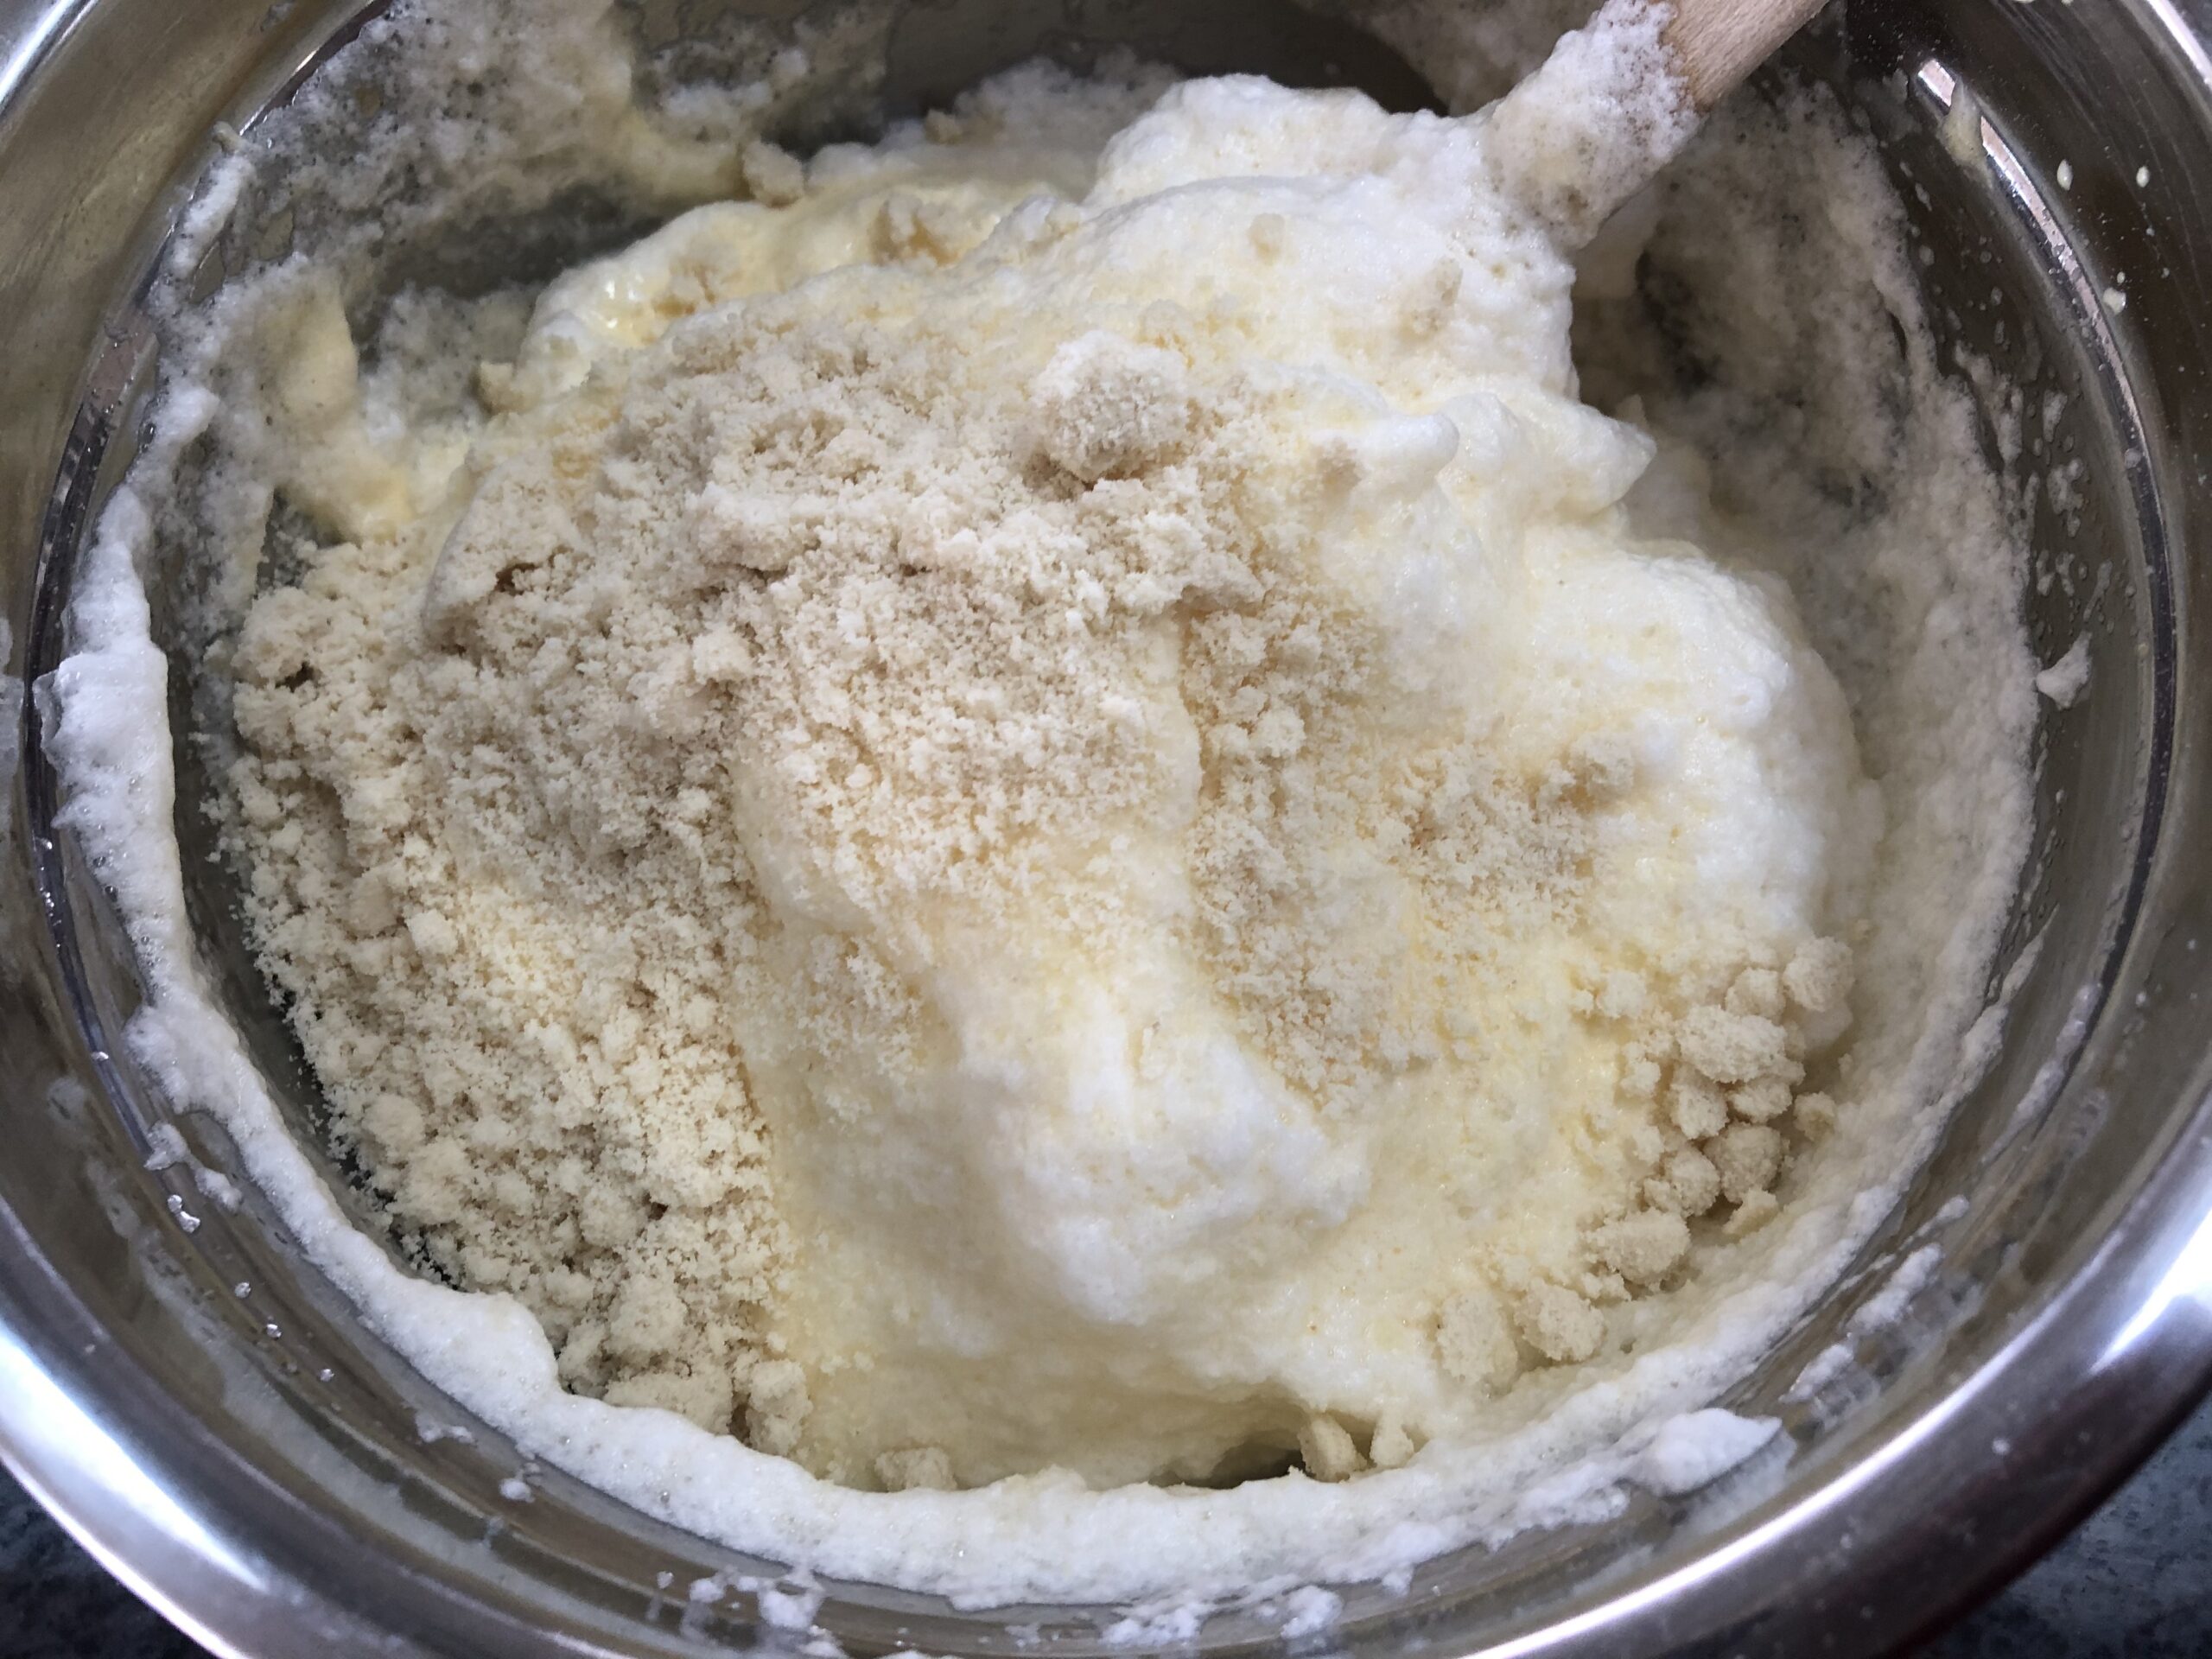 adding almond flour